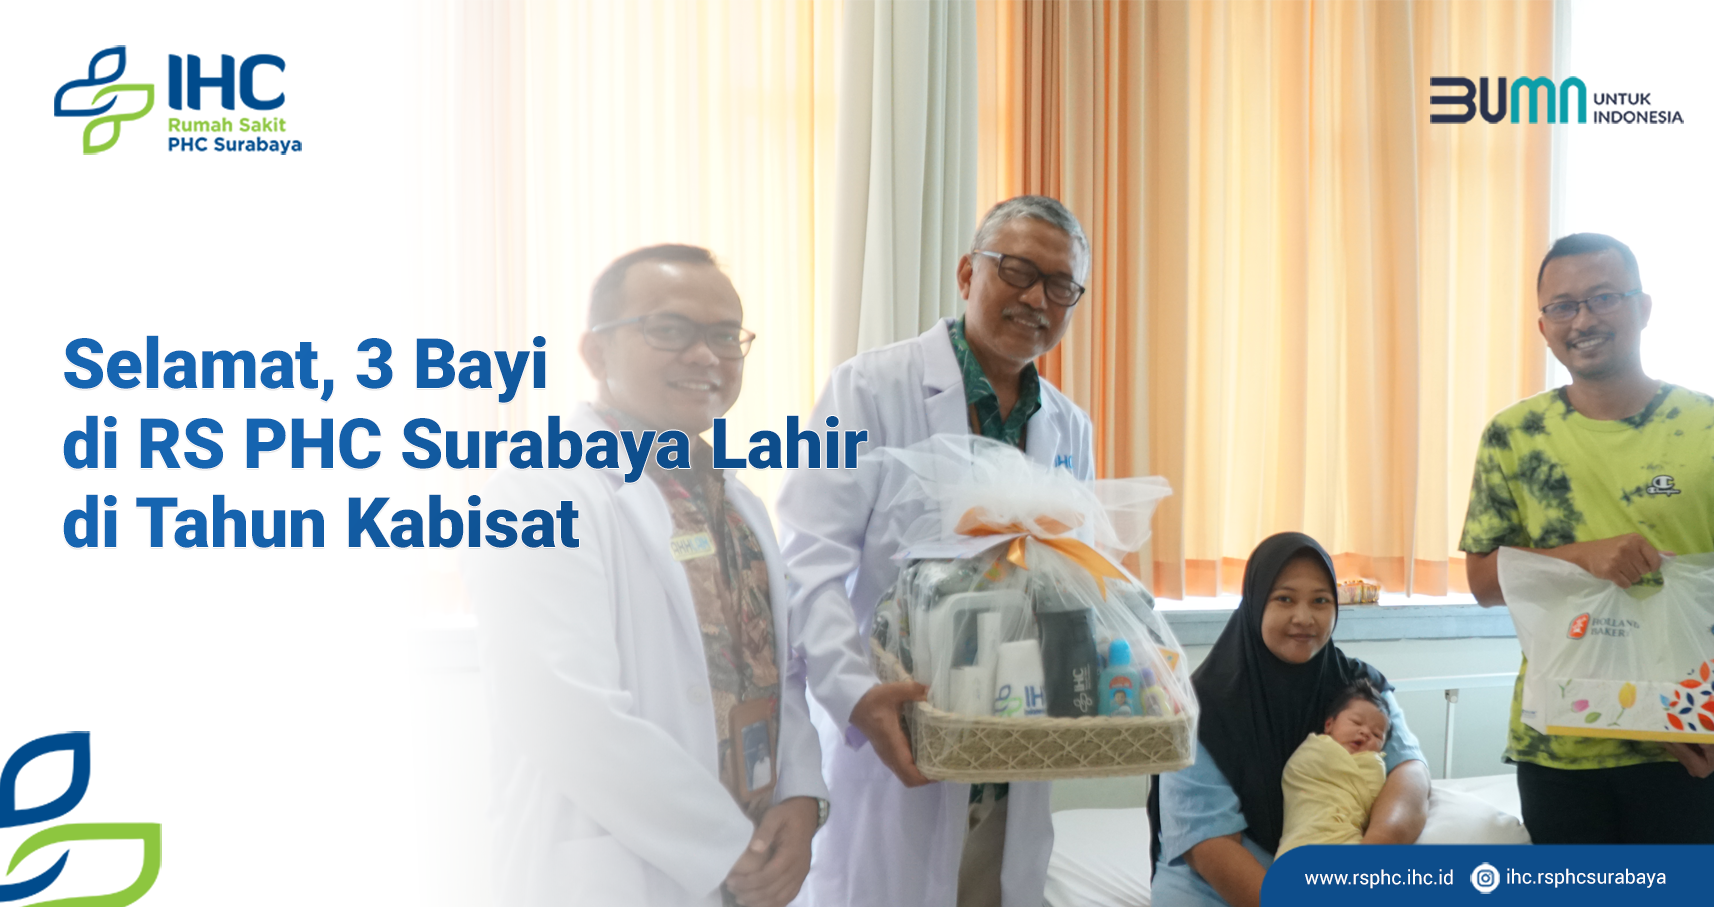 Selamat, 3 Bayi di RS PHC Surabaya Lahir di Tahun Kabisat